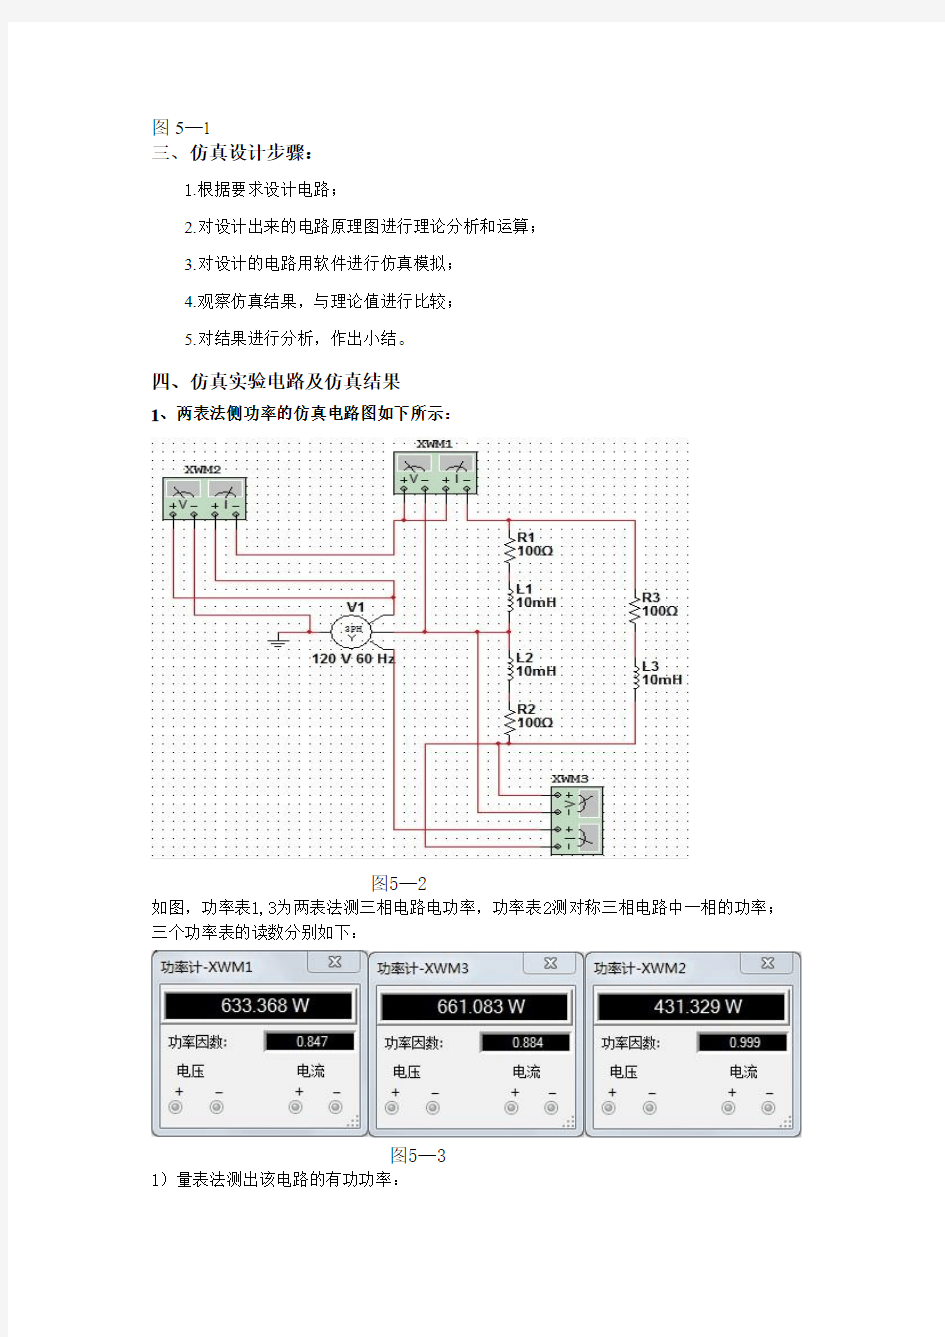 仿真实验五        三相电路的仿真实验    上海电力